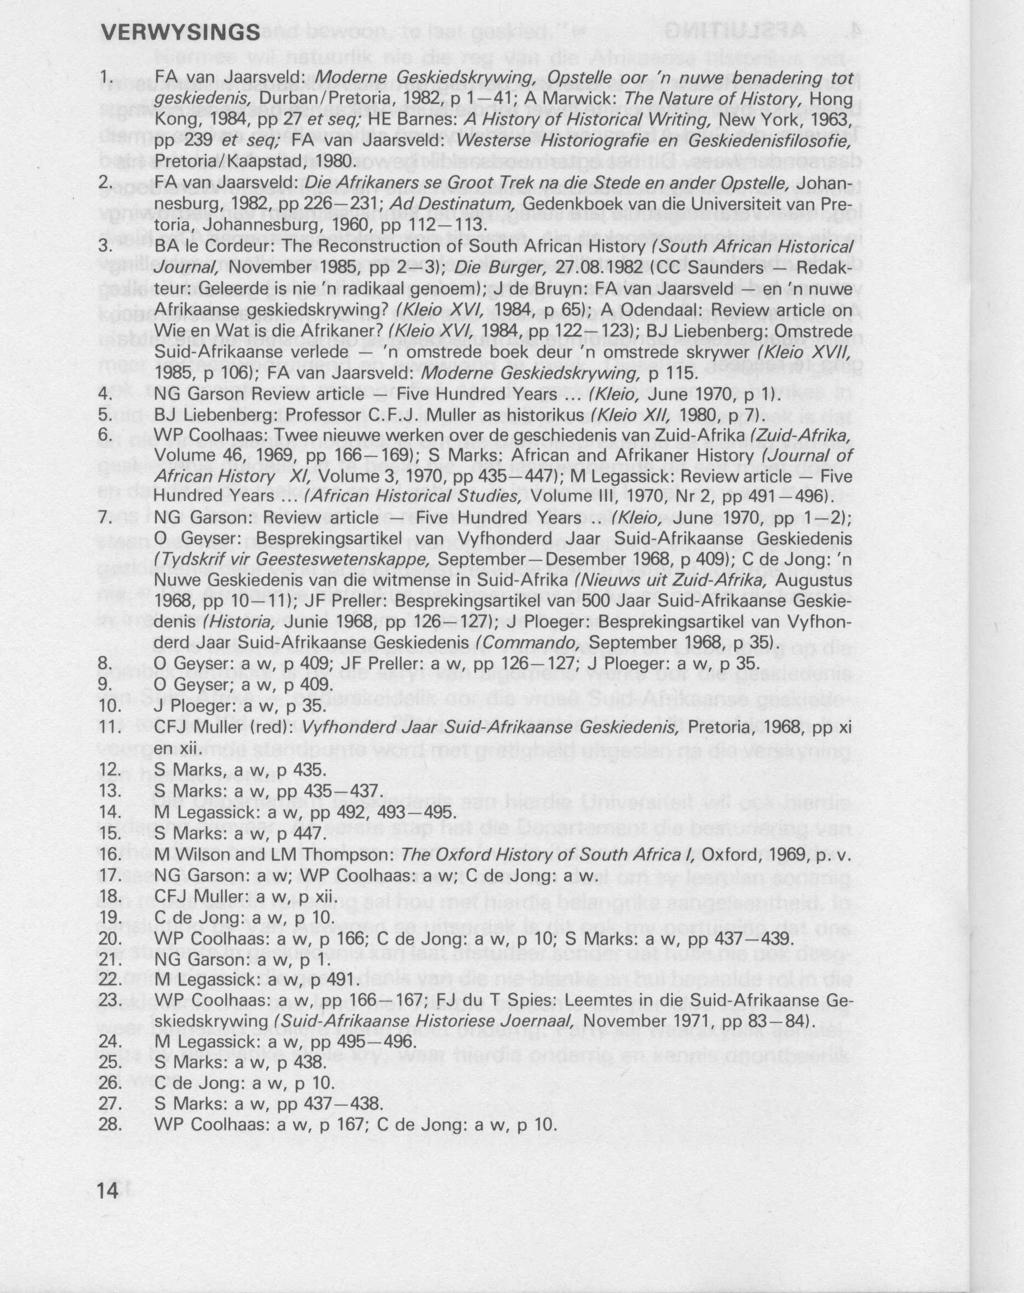 1. FA van Jaarsveld: Moderne Geskiedskrywing, Opstelle oar 'n nuwe benadering tot geskiedenis, Durban/Pretoria, 1982, p 1-41; A Marwick: The Nature of History, Hong Kong, 1984, pp 27 et seq; HE